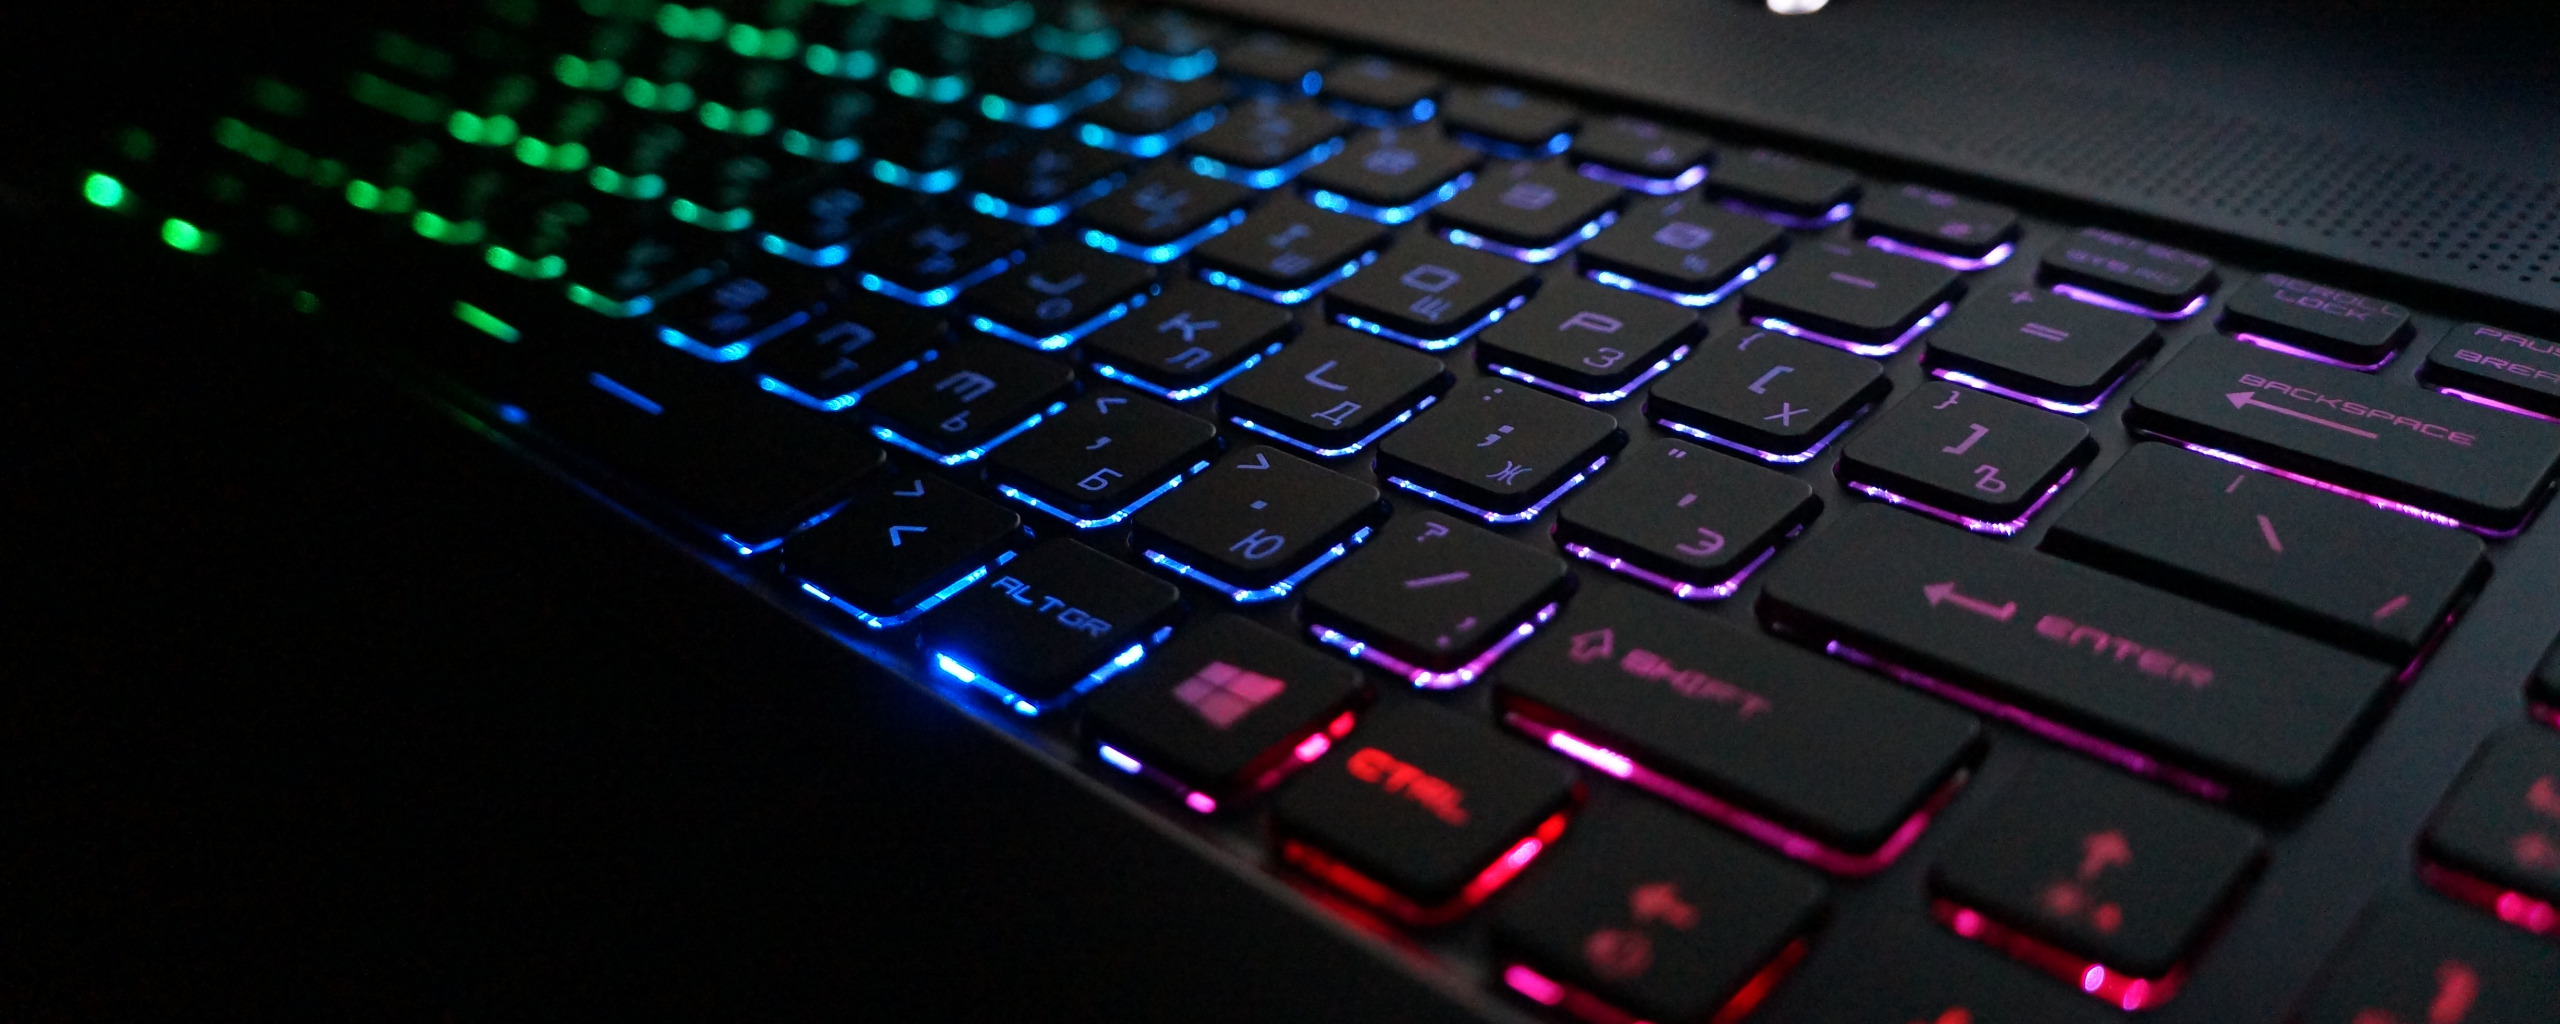 Подсветка клавиатуры ноутбука выключается. Клавиатура с подсветкой. Светящаяся клавиатура для ноутбука. Ноутбук с подсветкой клавиатуры. Мультимедийная клавиатура с подсветкой.